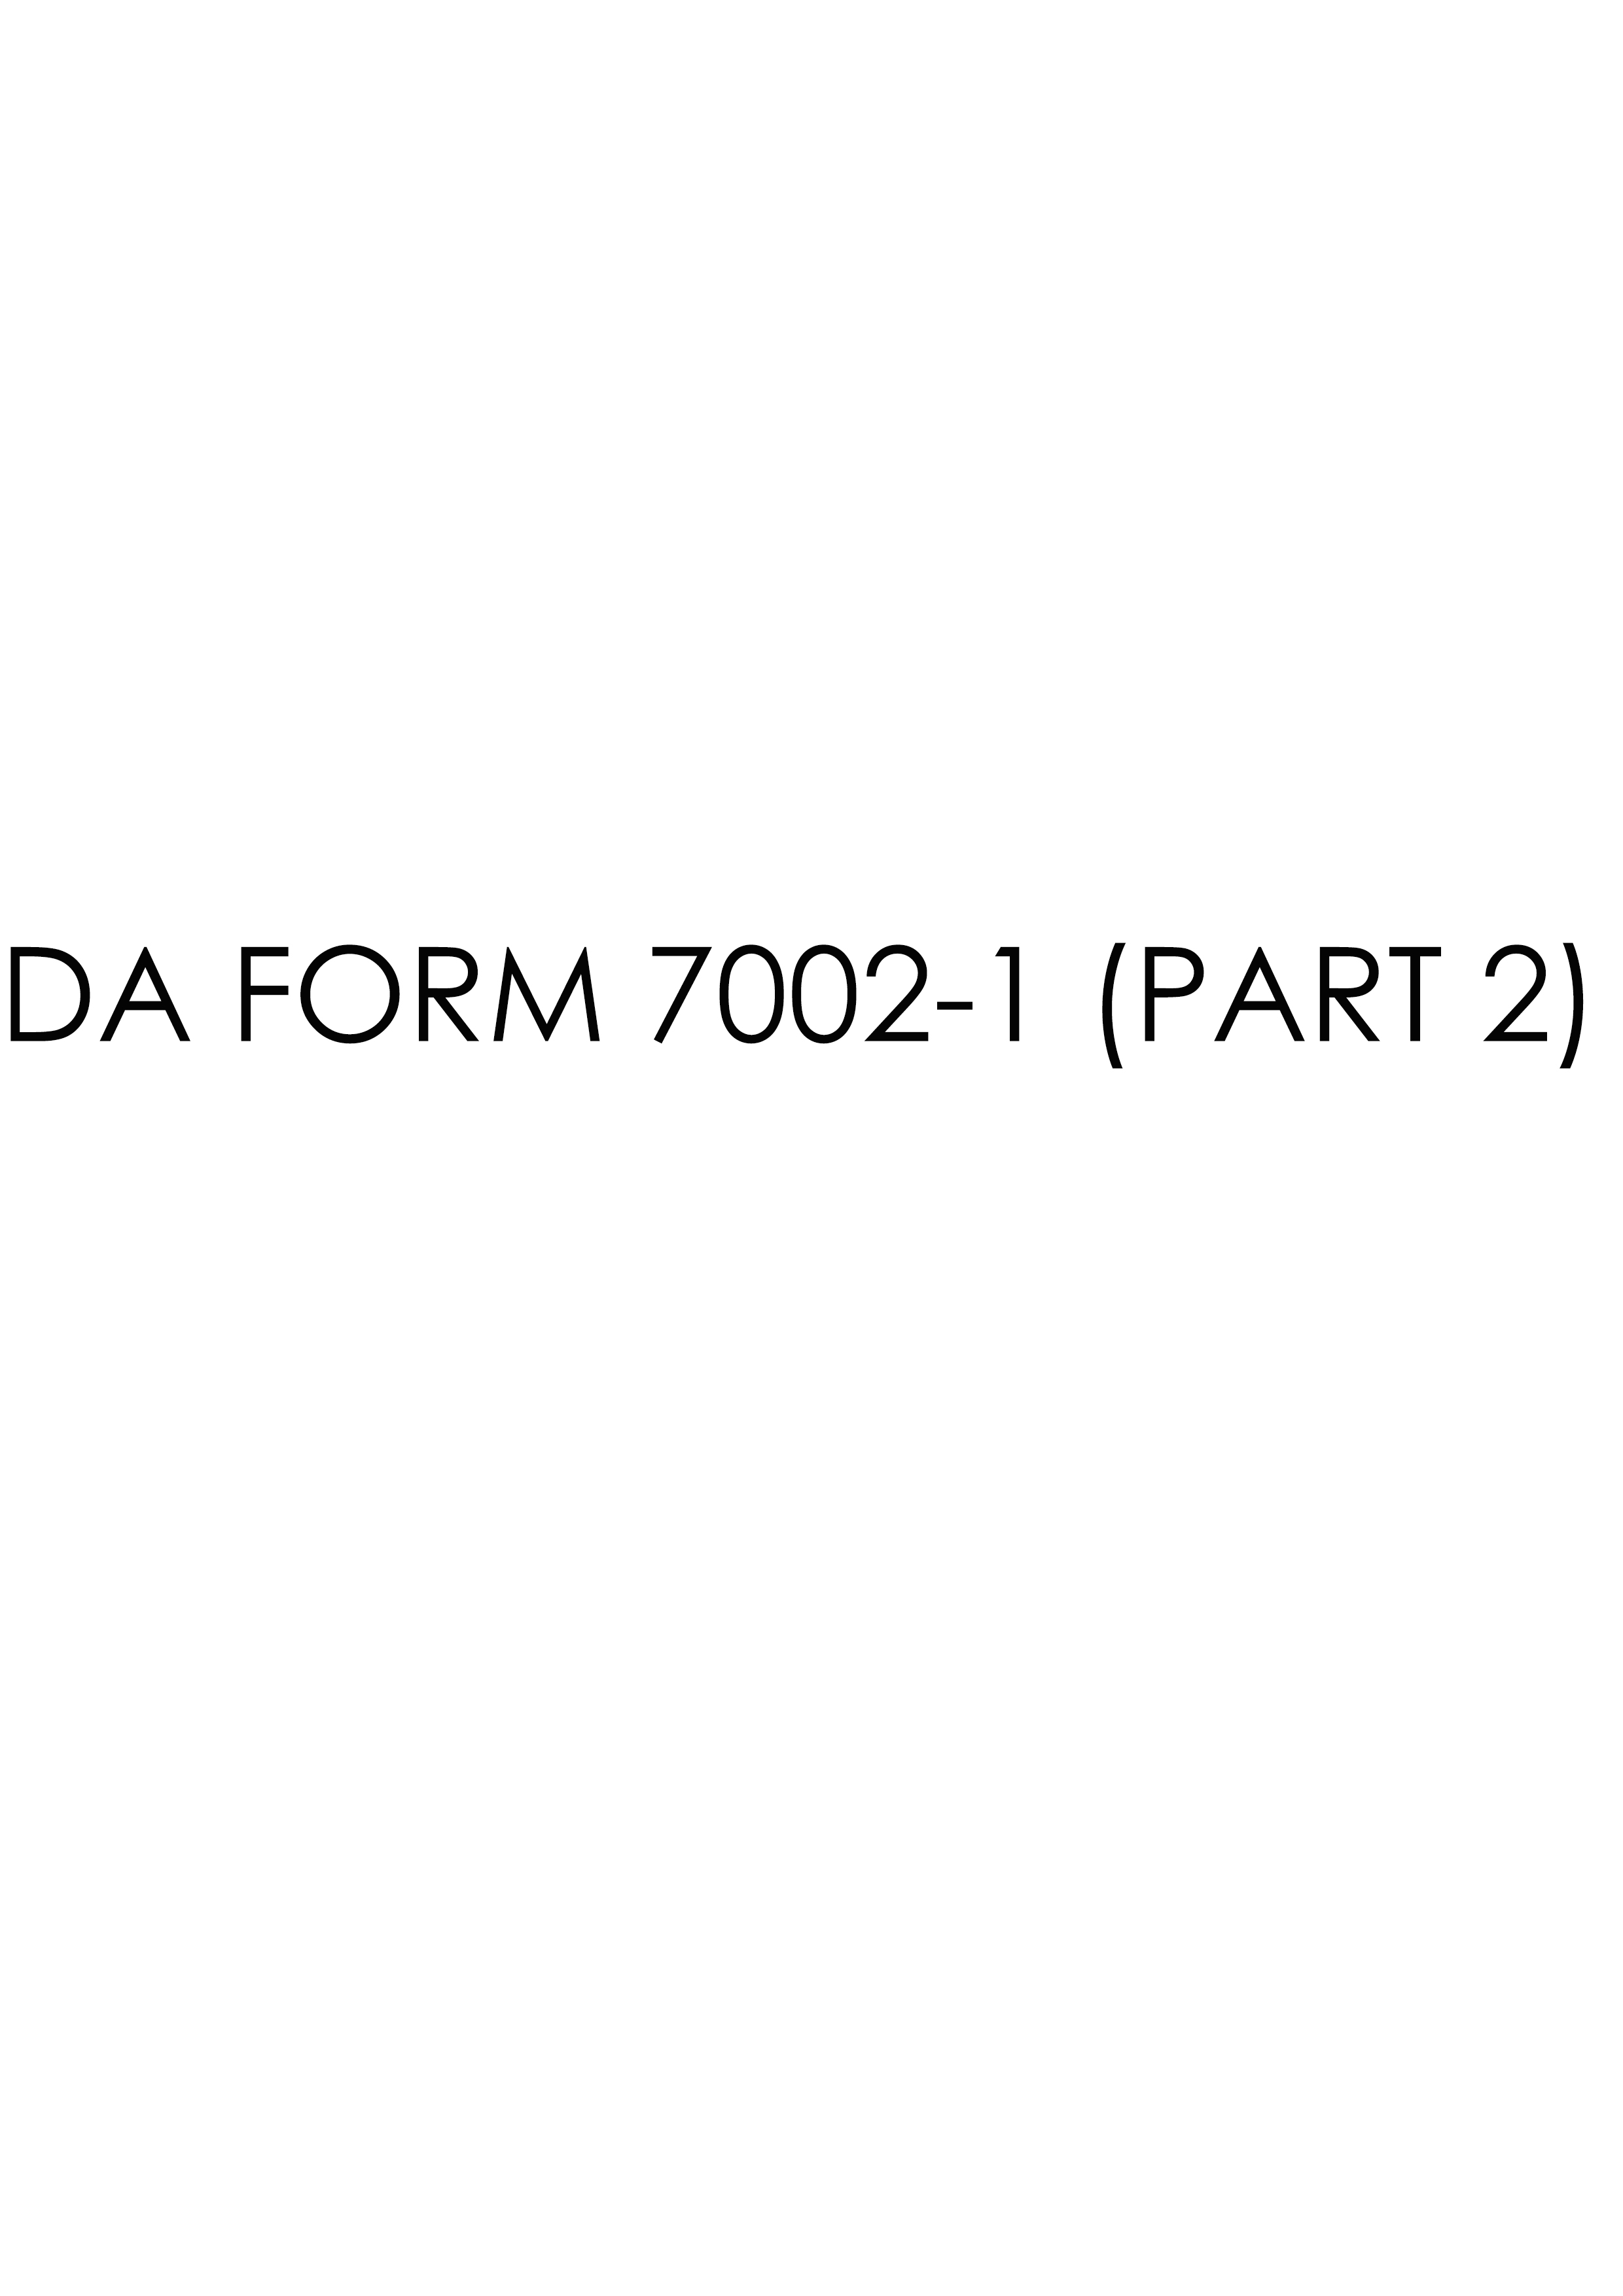 da Form 7002-1 (PART 2) fillable